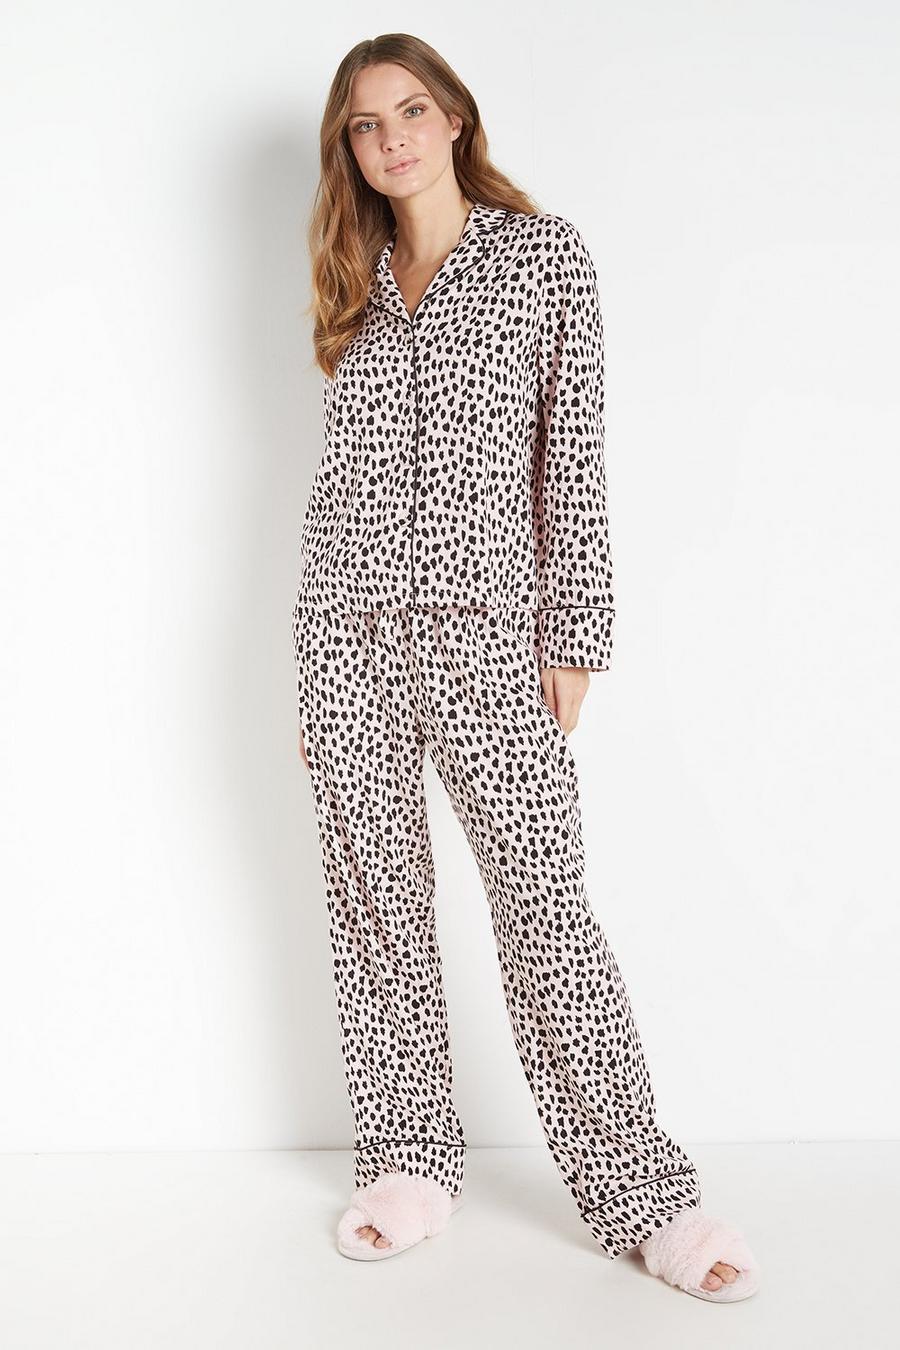 Spot Print Pyjamas Set